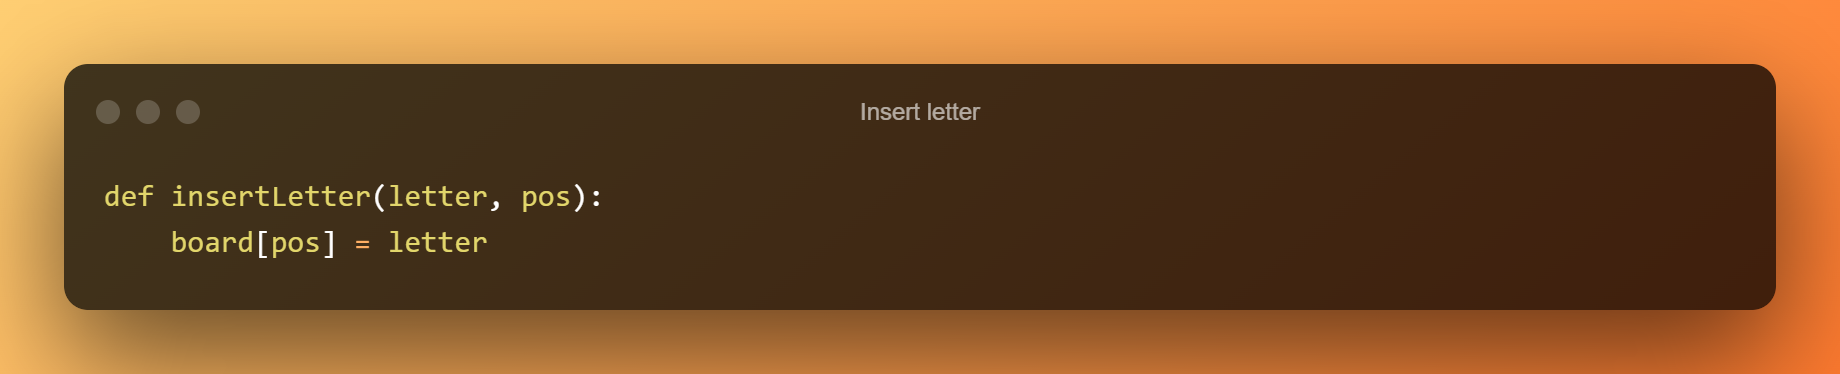 Insert Letter